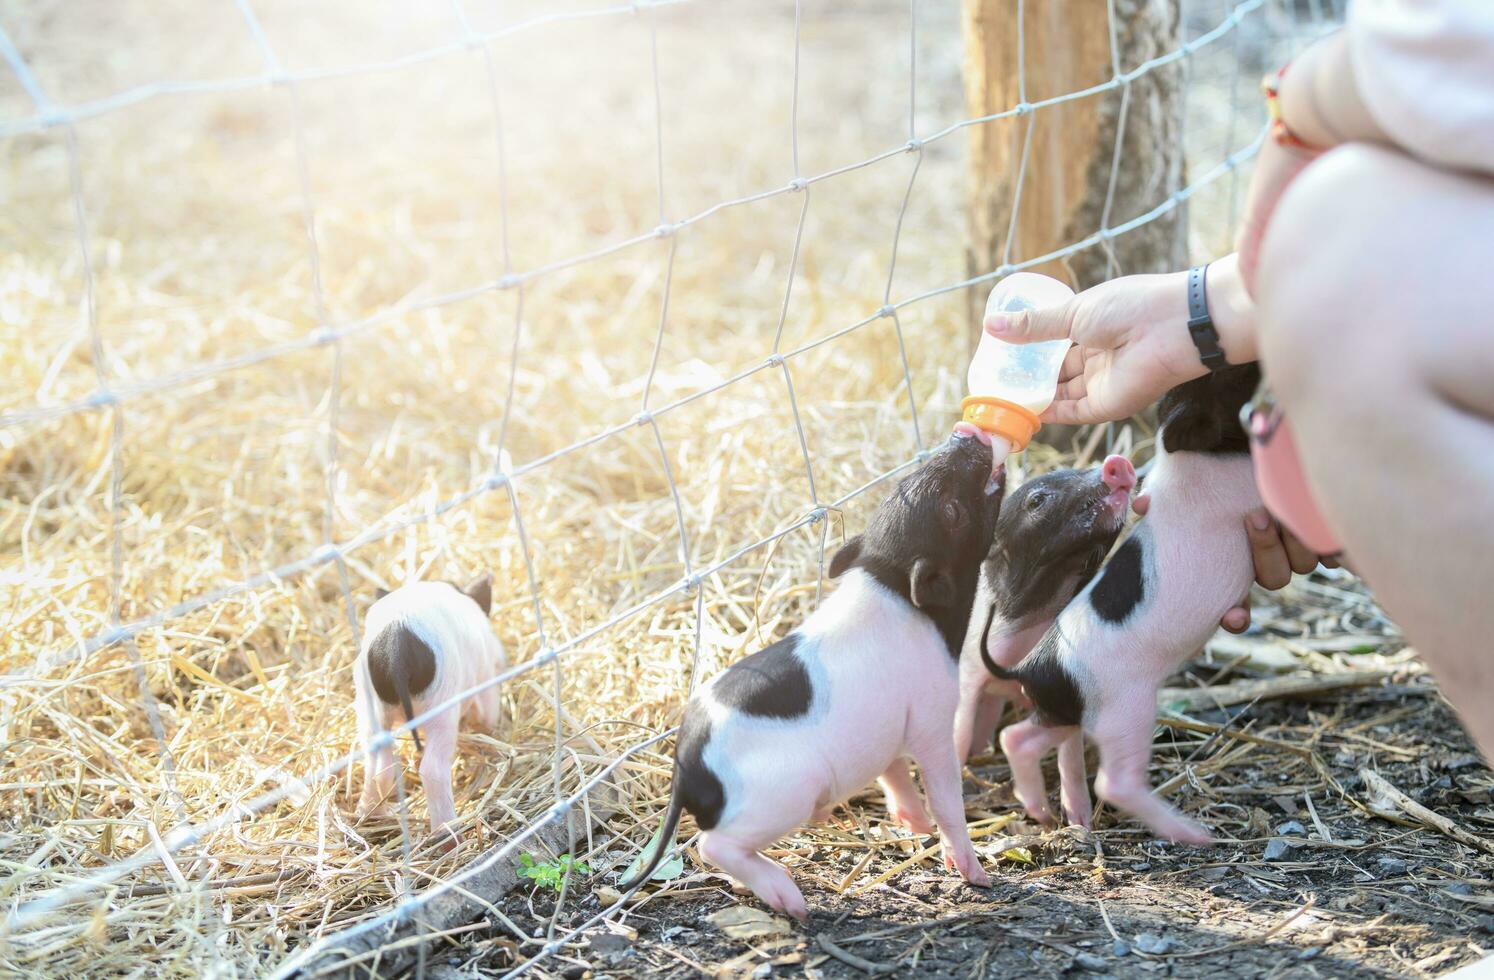 farmer feeding milk to baby pig in farm photo